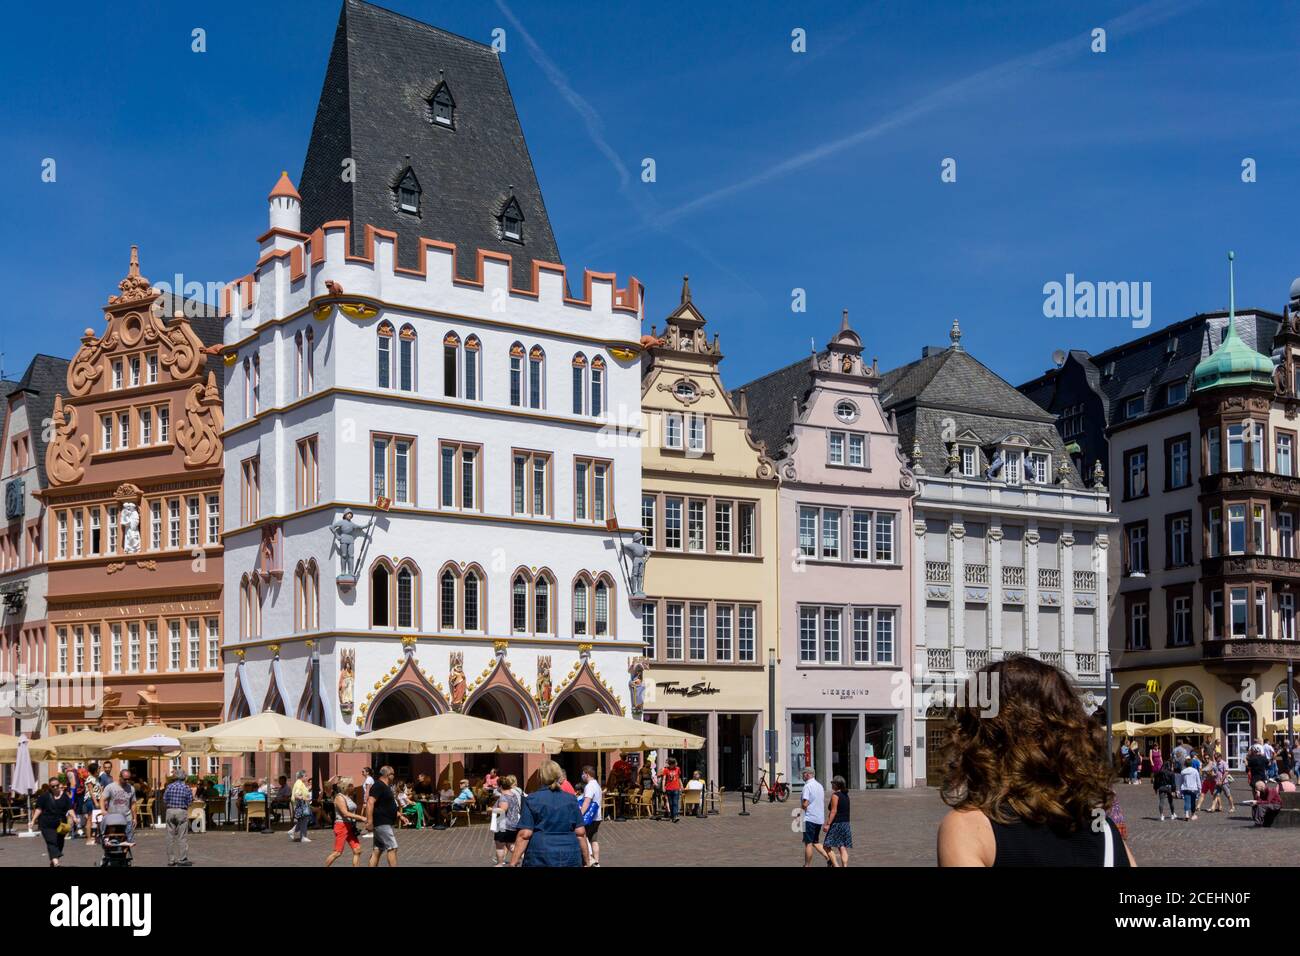 Trèves, RP / Allemagne - 29 juillet 2020 : vue sur la place Hauptmarkt dans la vieille ville historique de Trèves sur la Moselle Banque D'Images